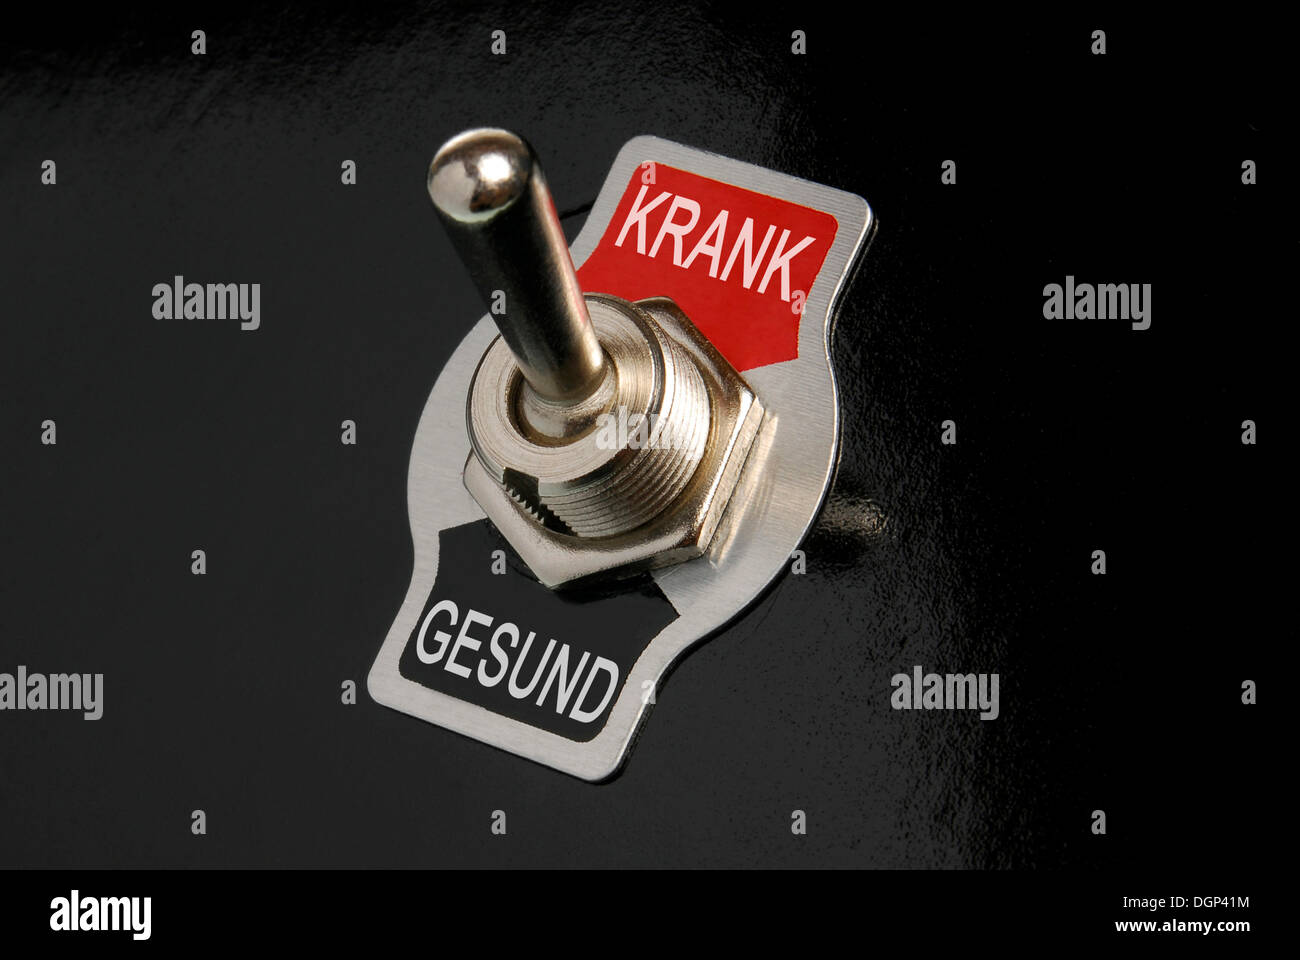 Interruptor basculante, etiquetados y Krank Gesund, Alemán para enfermos y sanos, imagen simbólica Foto de stock